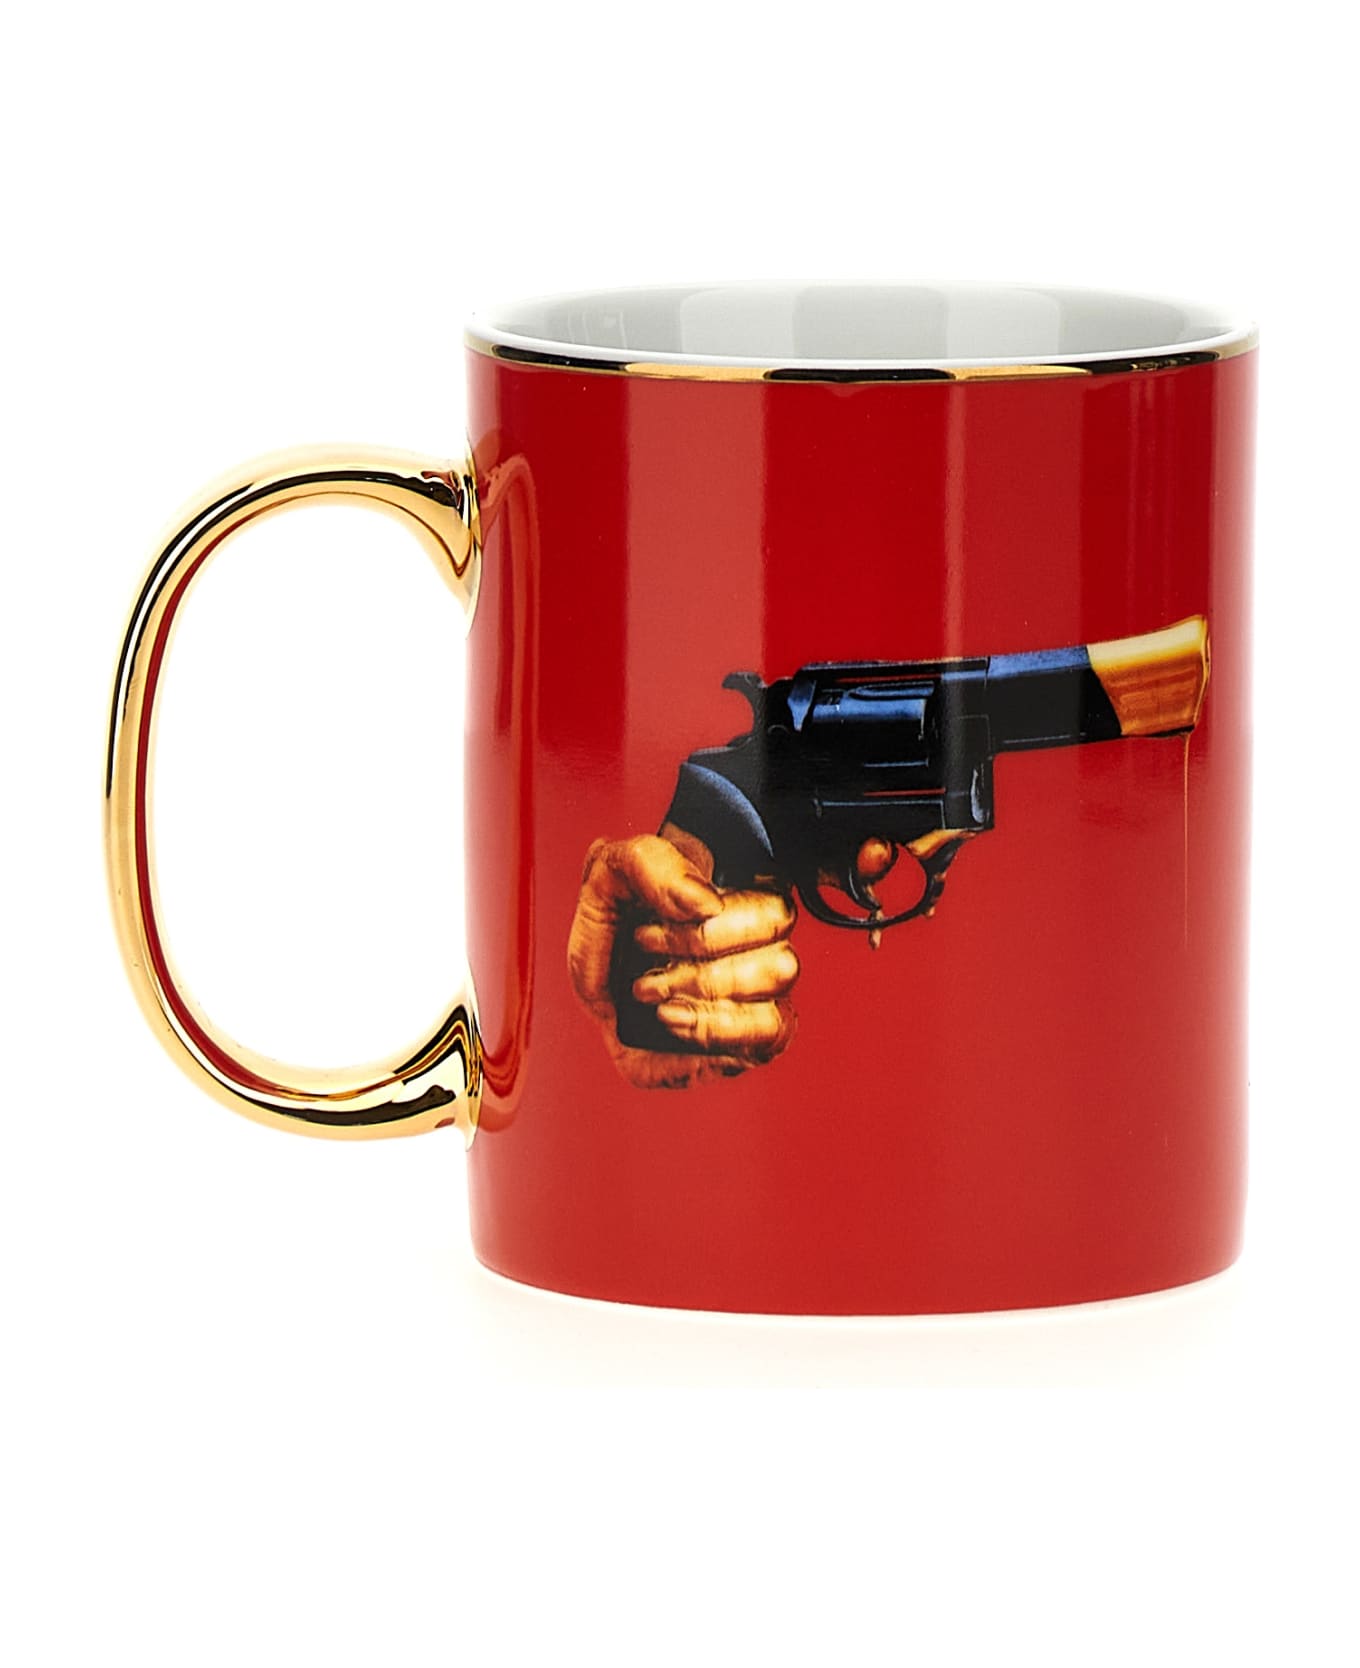 Seletti X Toiletpaper 'revolver' Cup - Red